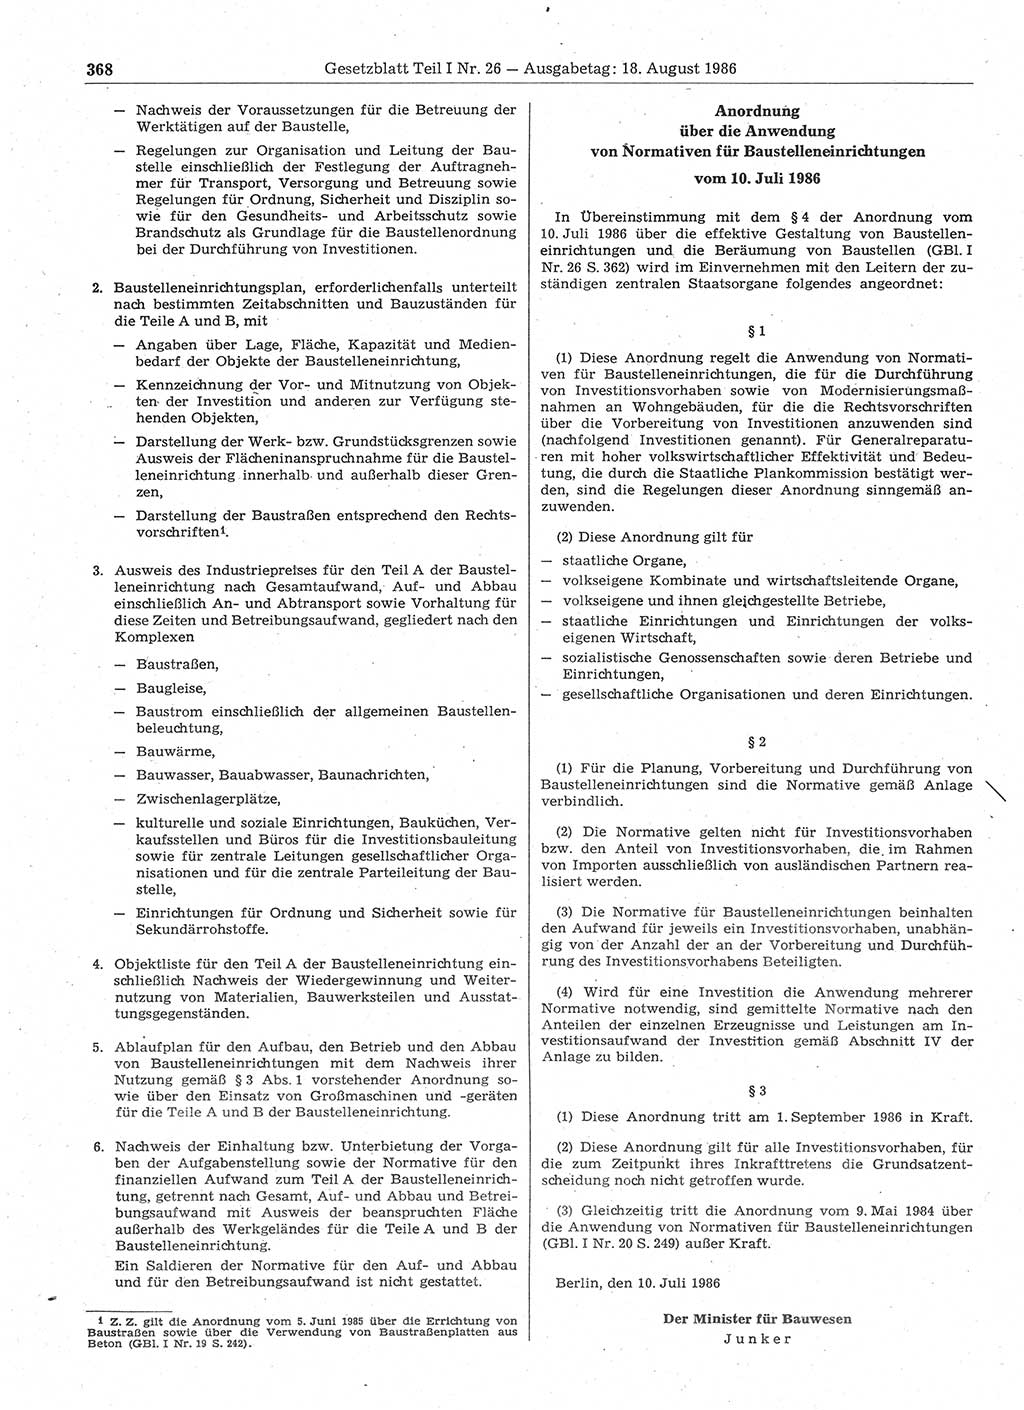 Gesetzblatt (GBl.) der Deutschen Demokratischen Republik (DDR) Teil Ⅰ 1986, Seite 368 (GBl. DDR Ⅰ 1986, S. 368)